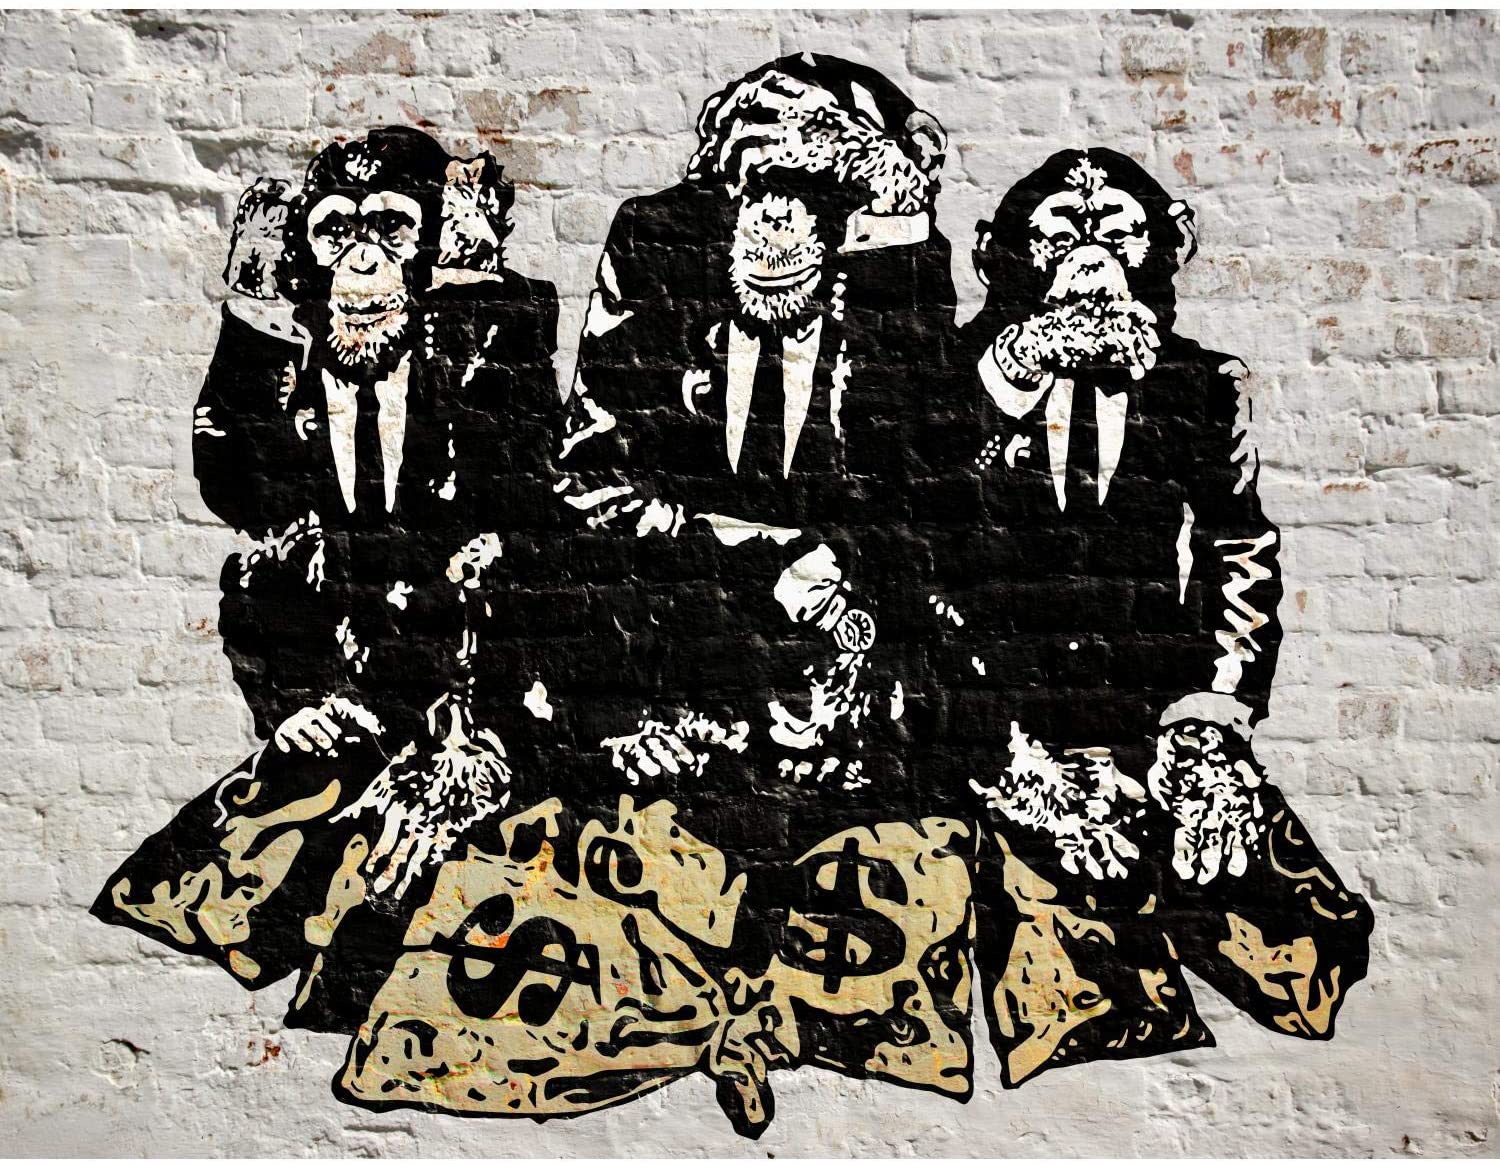 Photo Wallpaper Banksy Street Art Monkey Money Bags Banksy Three Wise Monkeys 212 Hd Wallpaper Backgrounds Download